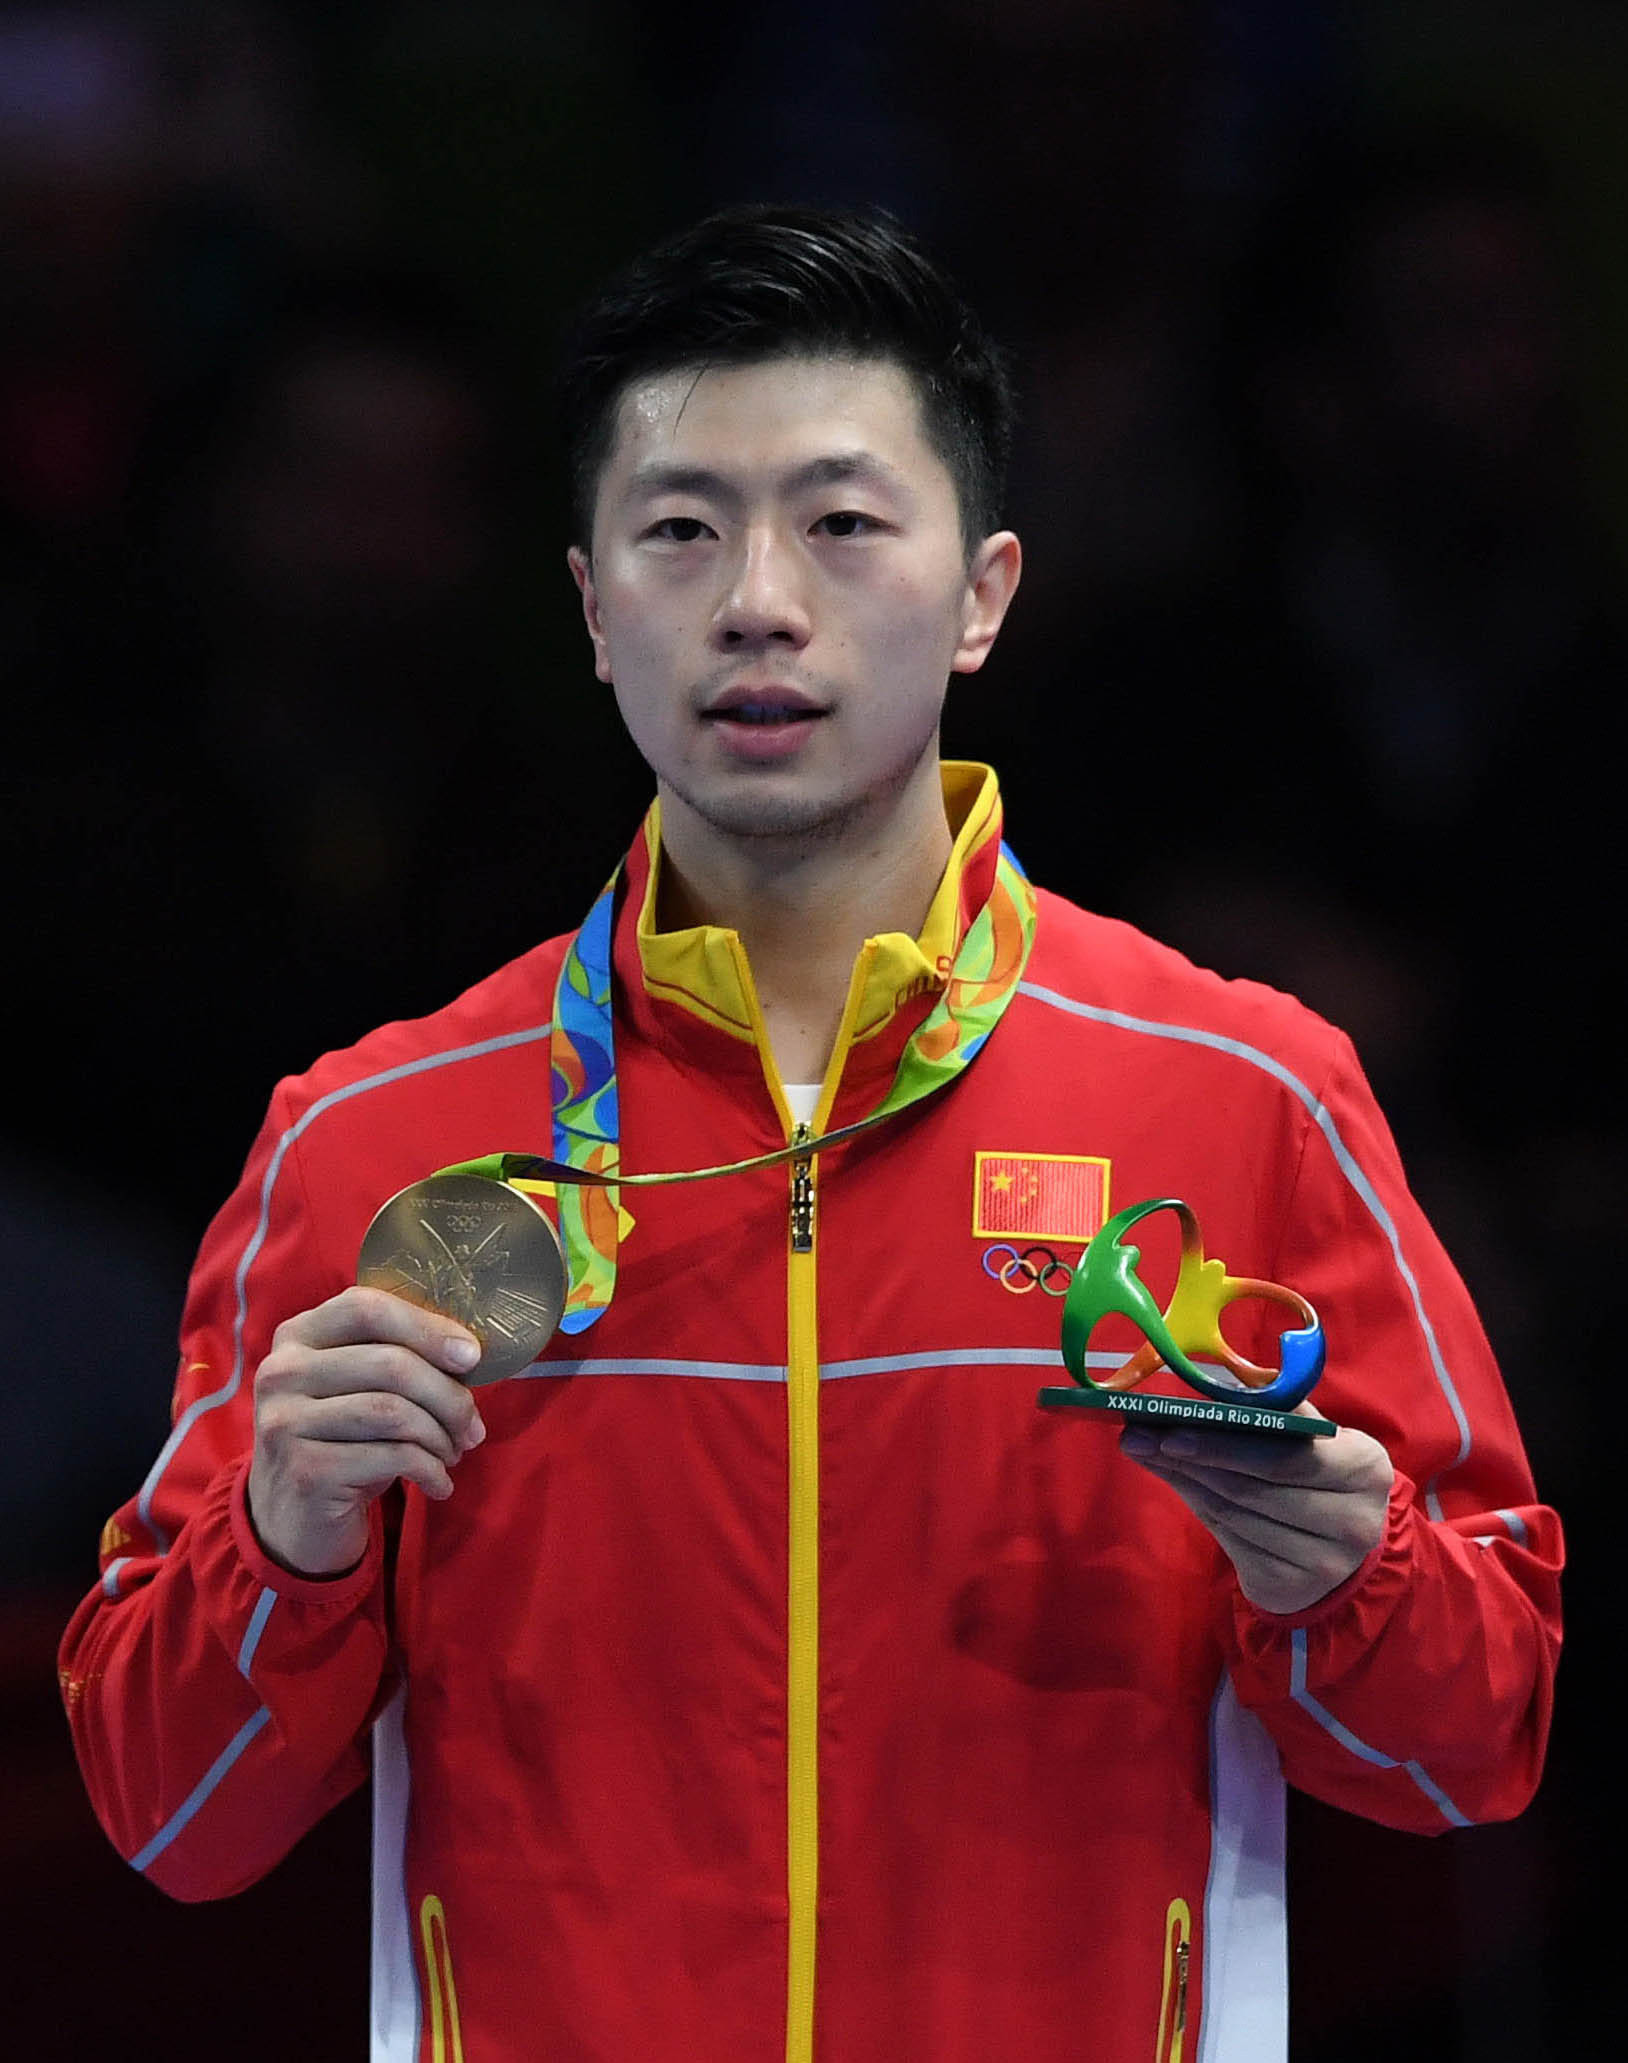 马龙和丁宁当选国际乒联年度最佳运动员